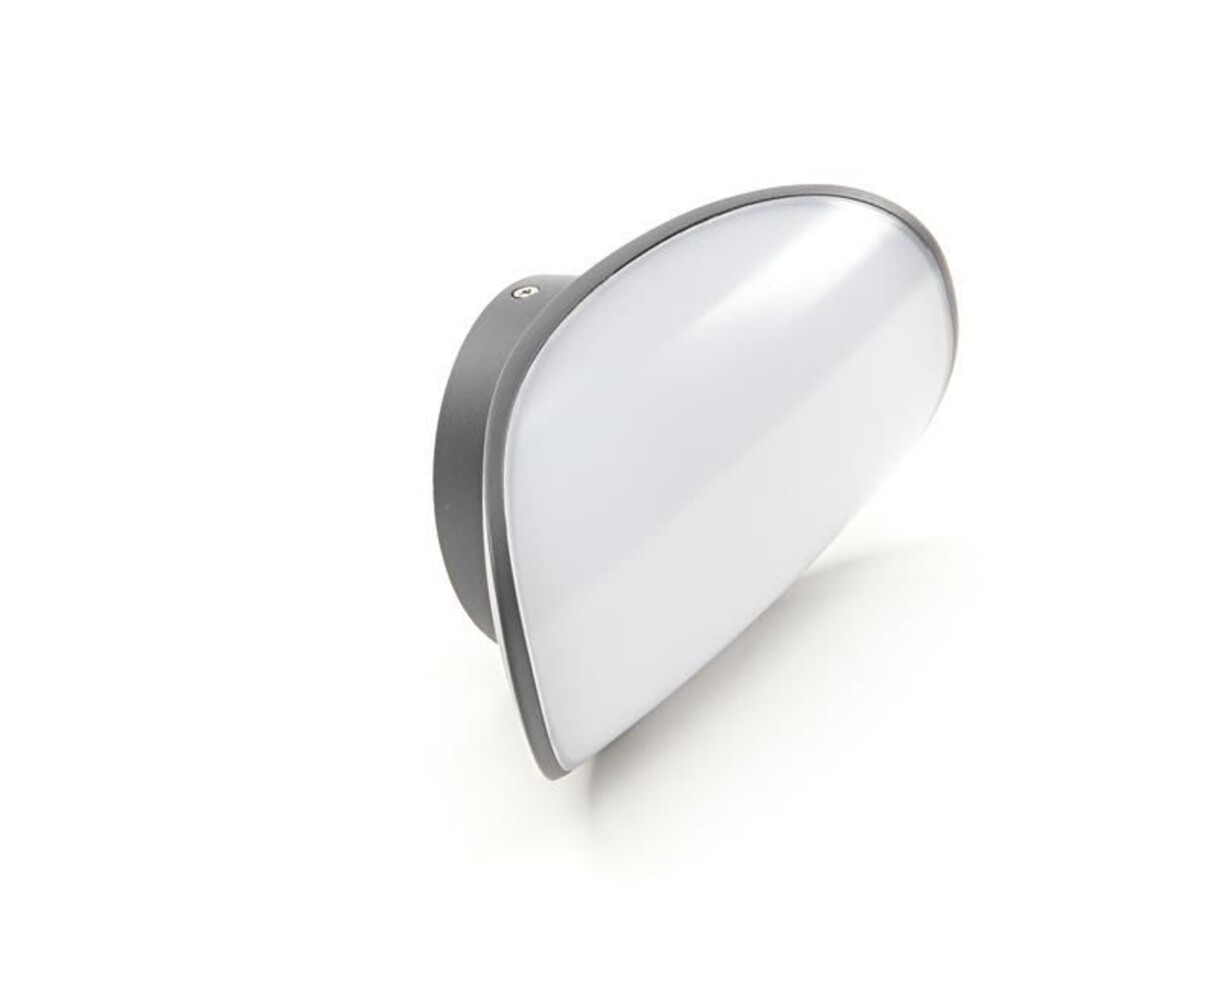 Elegante Wandleuchte Avior von der Marke Deko-Light, perfekt für eine stimmungsvolle Beleuchtung